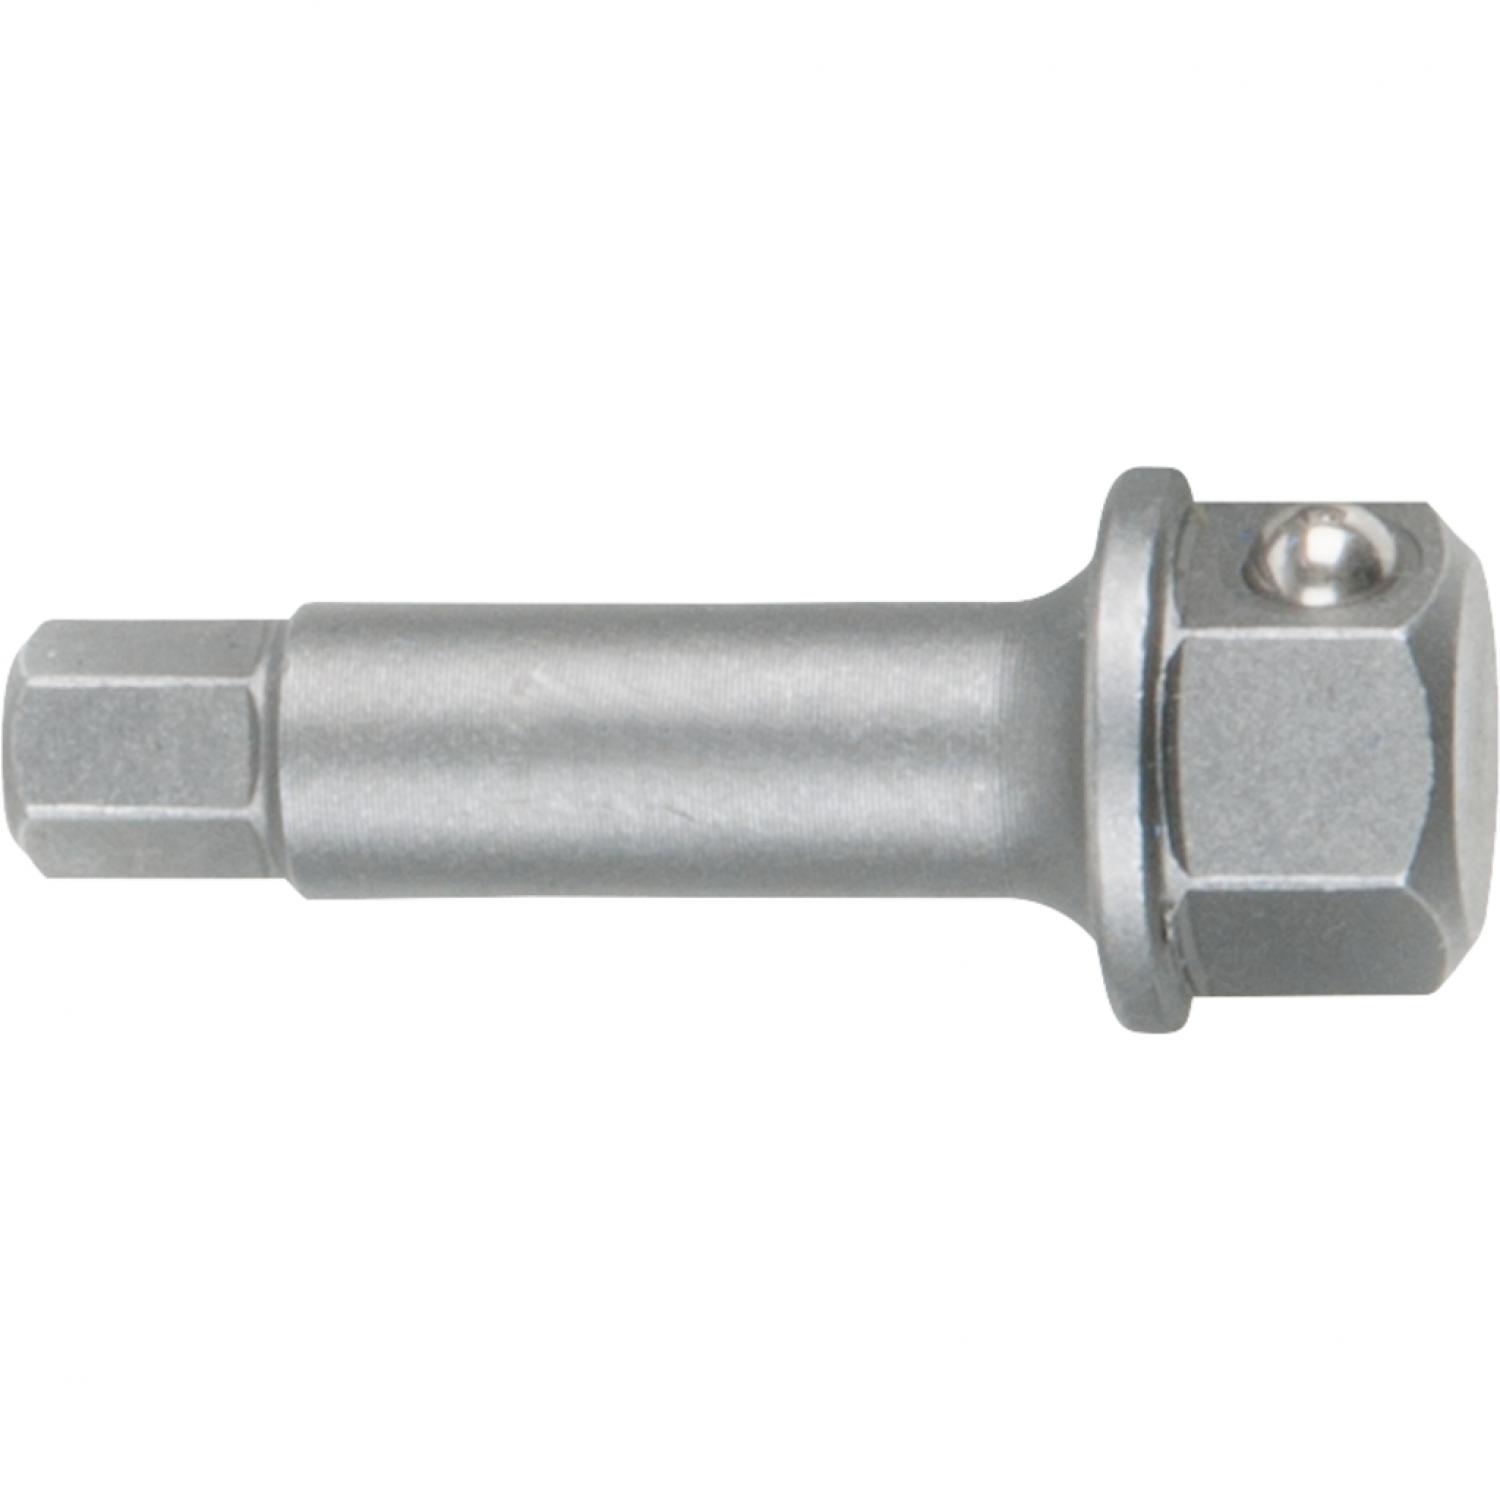 Головка для торцового ключа с внутренним шестигранником, 7 мм